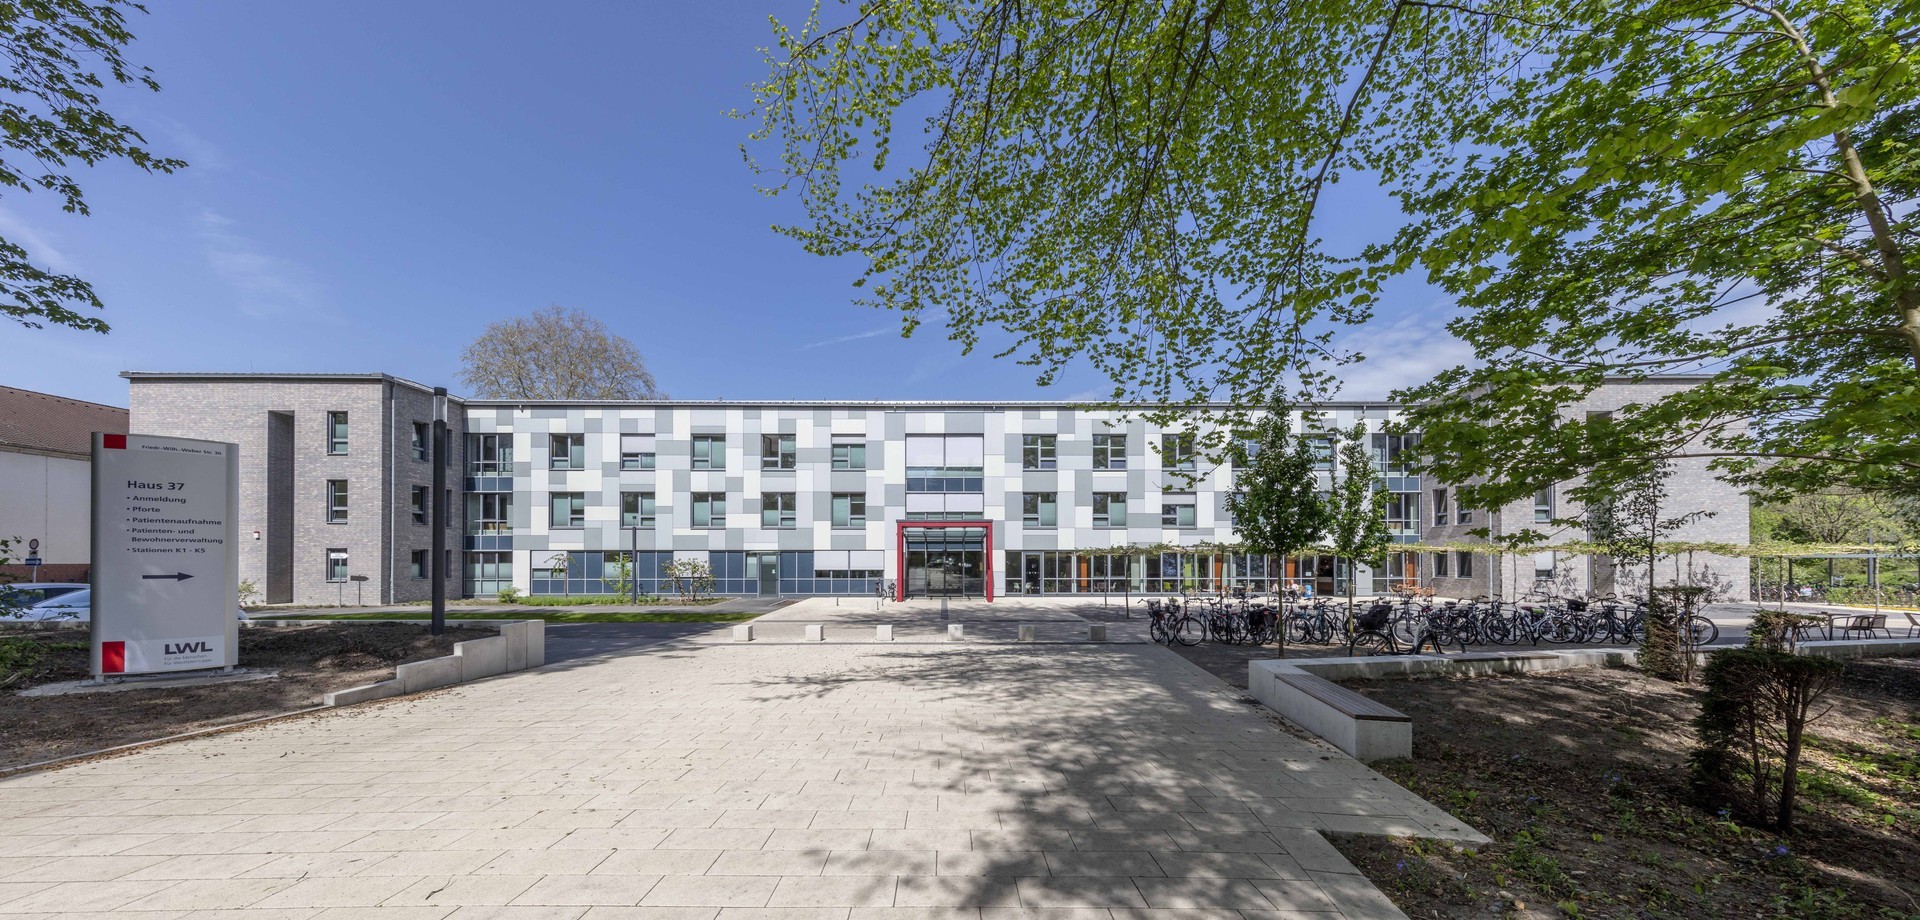 Hauptgebäude der LWL-Klinik Münster. Ein zweistöckiges modernes Gebäude aus hellem, grauen Stein, die große Eingangstür ist mit roten Steinen umrahmt